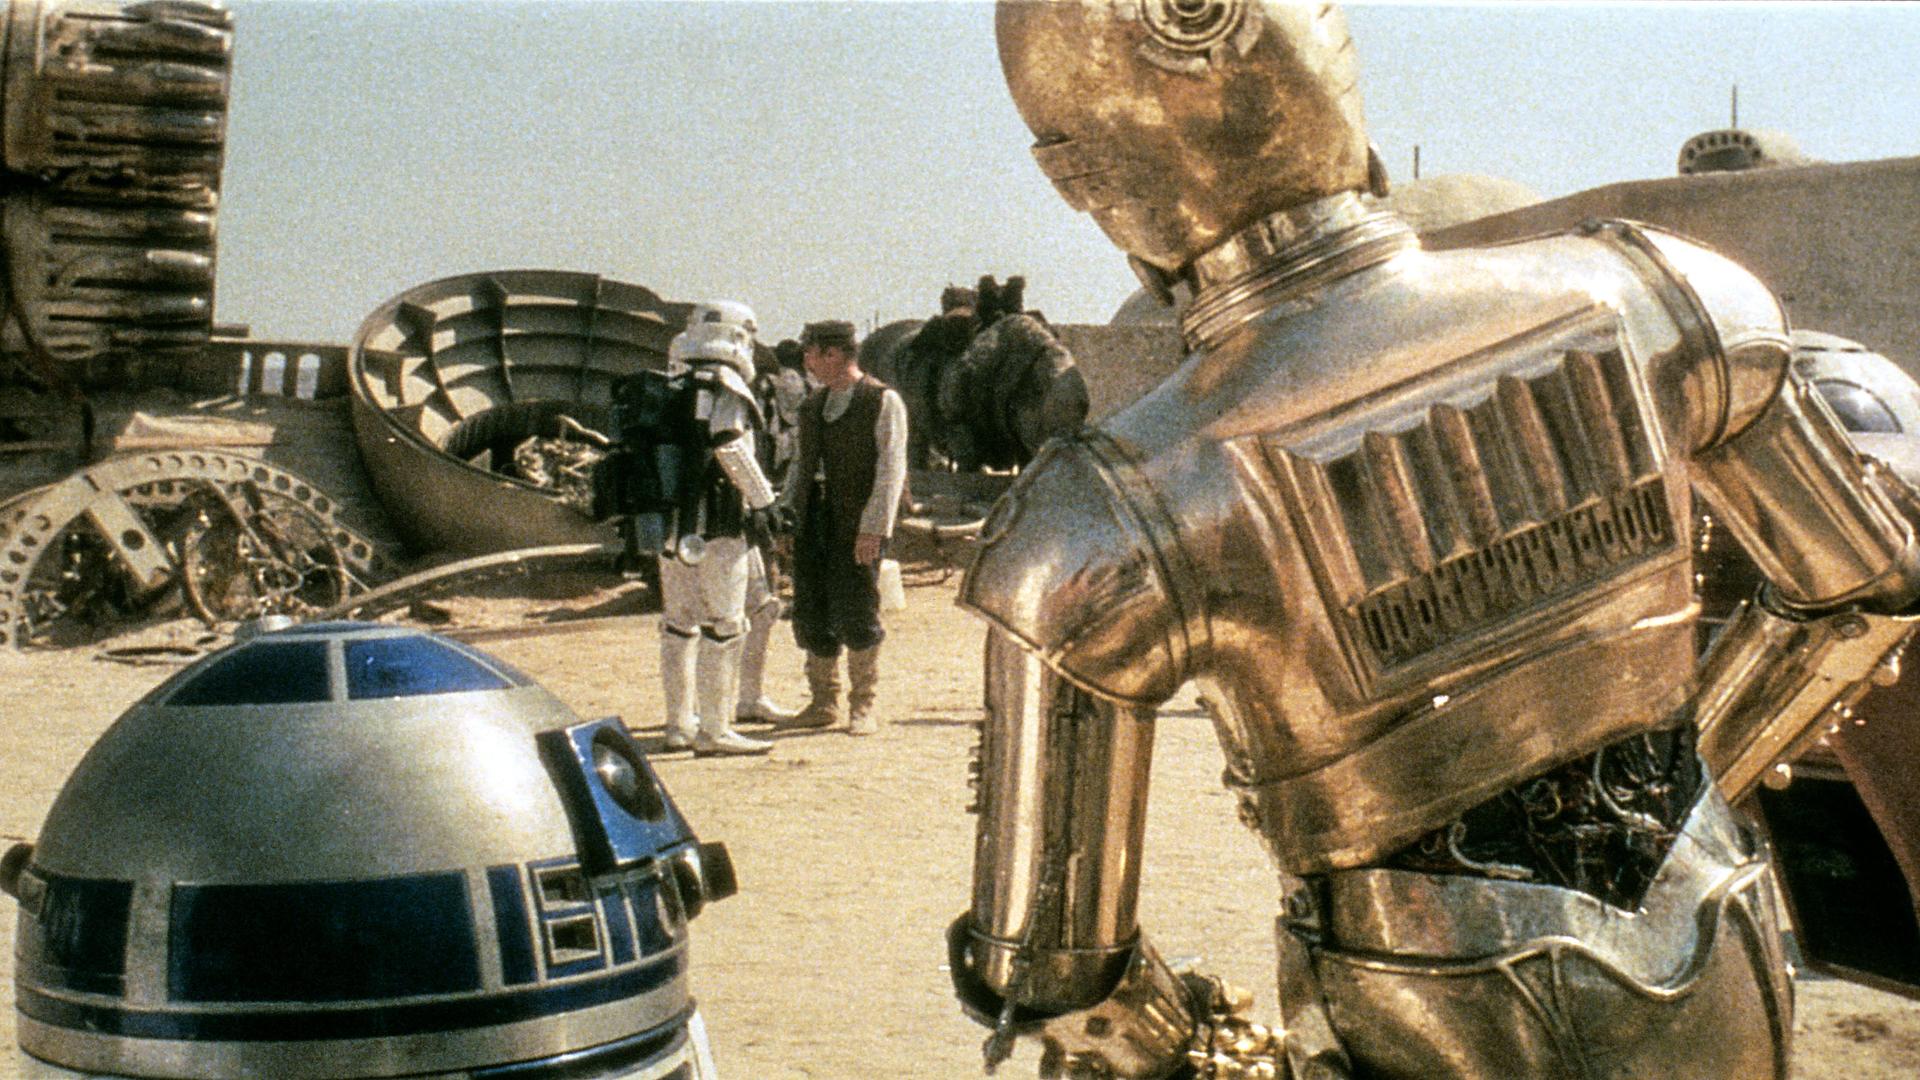 Eine Szene aus "Star Wars Episode IV - Eine neue Hoffnung": Die Droiden C3PO und R2D2 einen Stormtrooper.